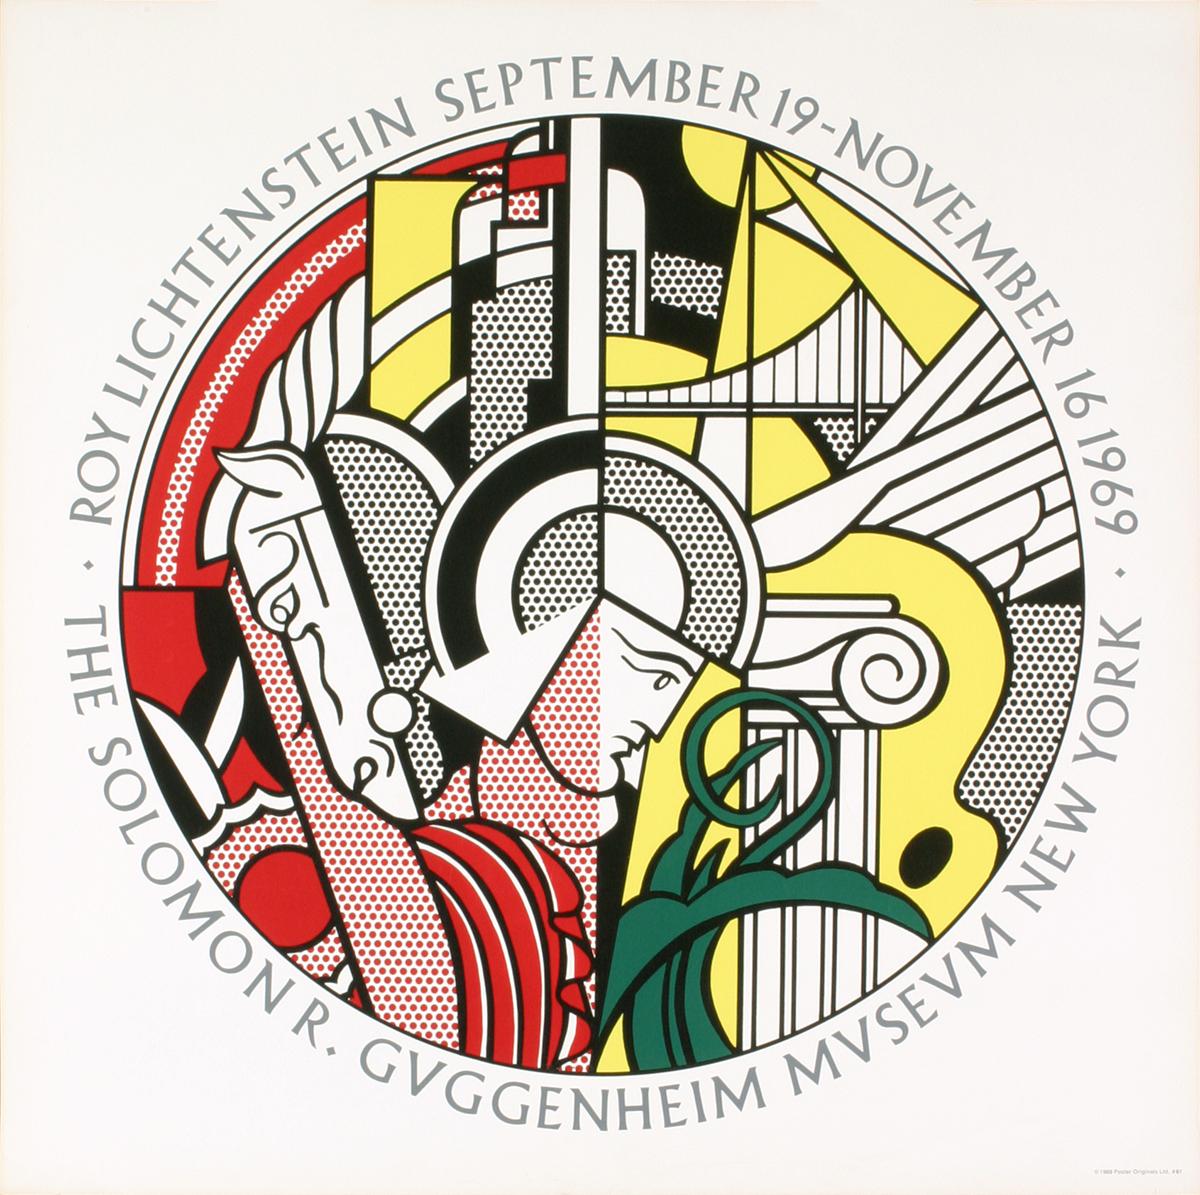 Sku : EF380
Artistics : Roy Lichtenstein
Titre : Musée Guggenheim
Année : 1969
Signé : Non
Médium : Sérigraphie
Taille du papier : 28.75 x 28.75 pouces ( 73.025 x 73.025 cm )
Taille de l'image : 23.25 x 23.25 pouces ( 59.055 x 59.055 cm )
Taille de